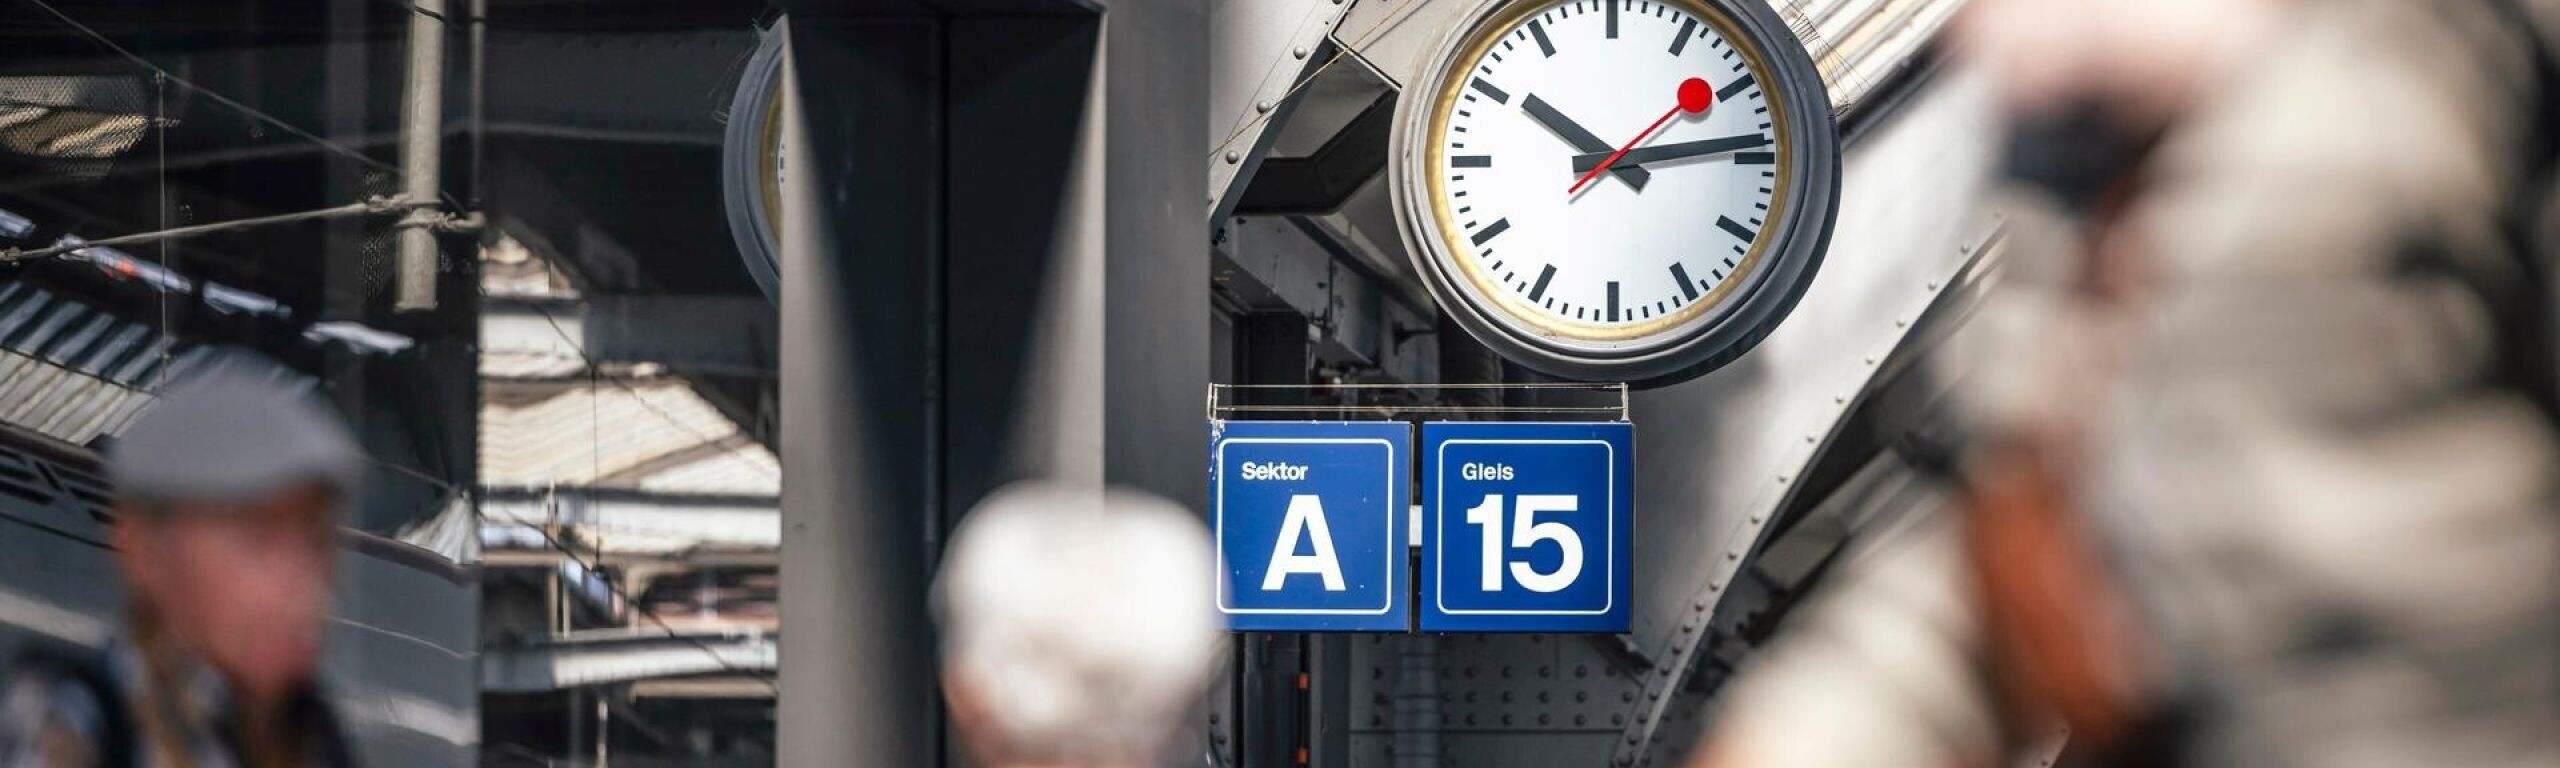 L’horloge de gare donne l’heure depuis 75 ans.